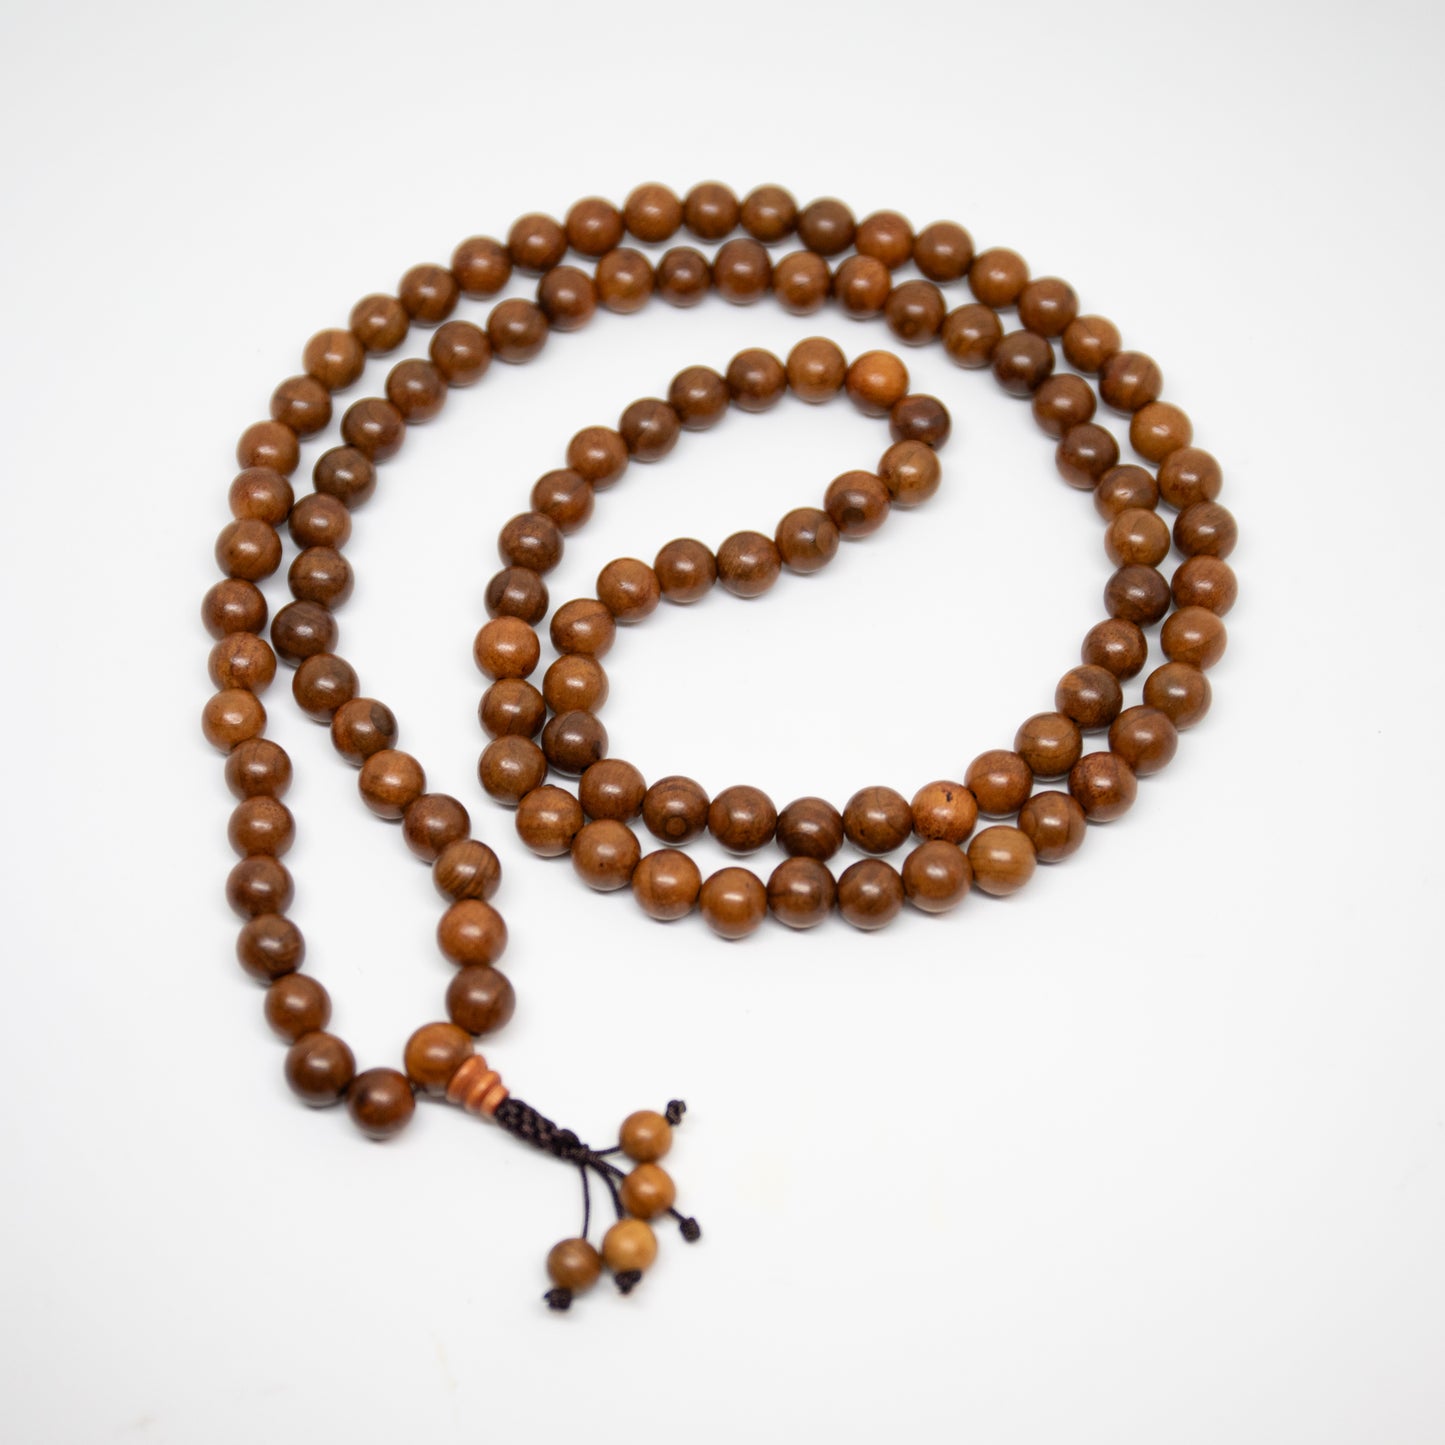 Sustainable Yew Wood Zen 108 Bead Mala - Prayer Beads 8mm (2 Pack)